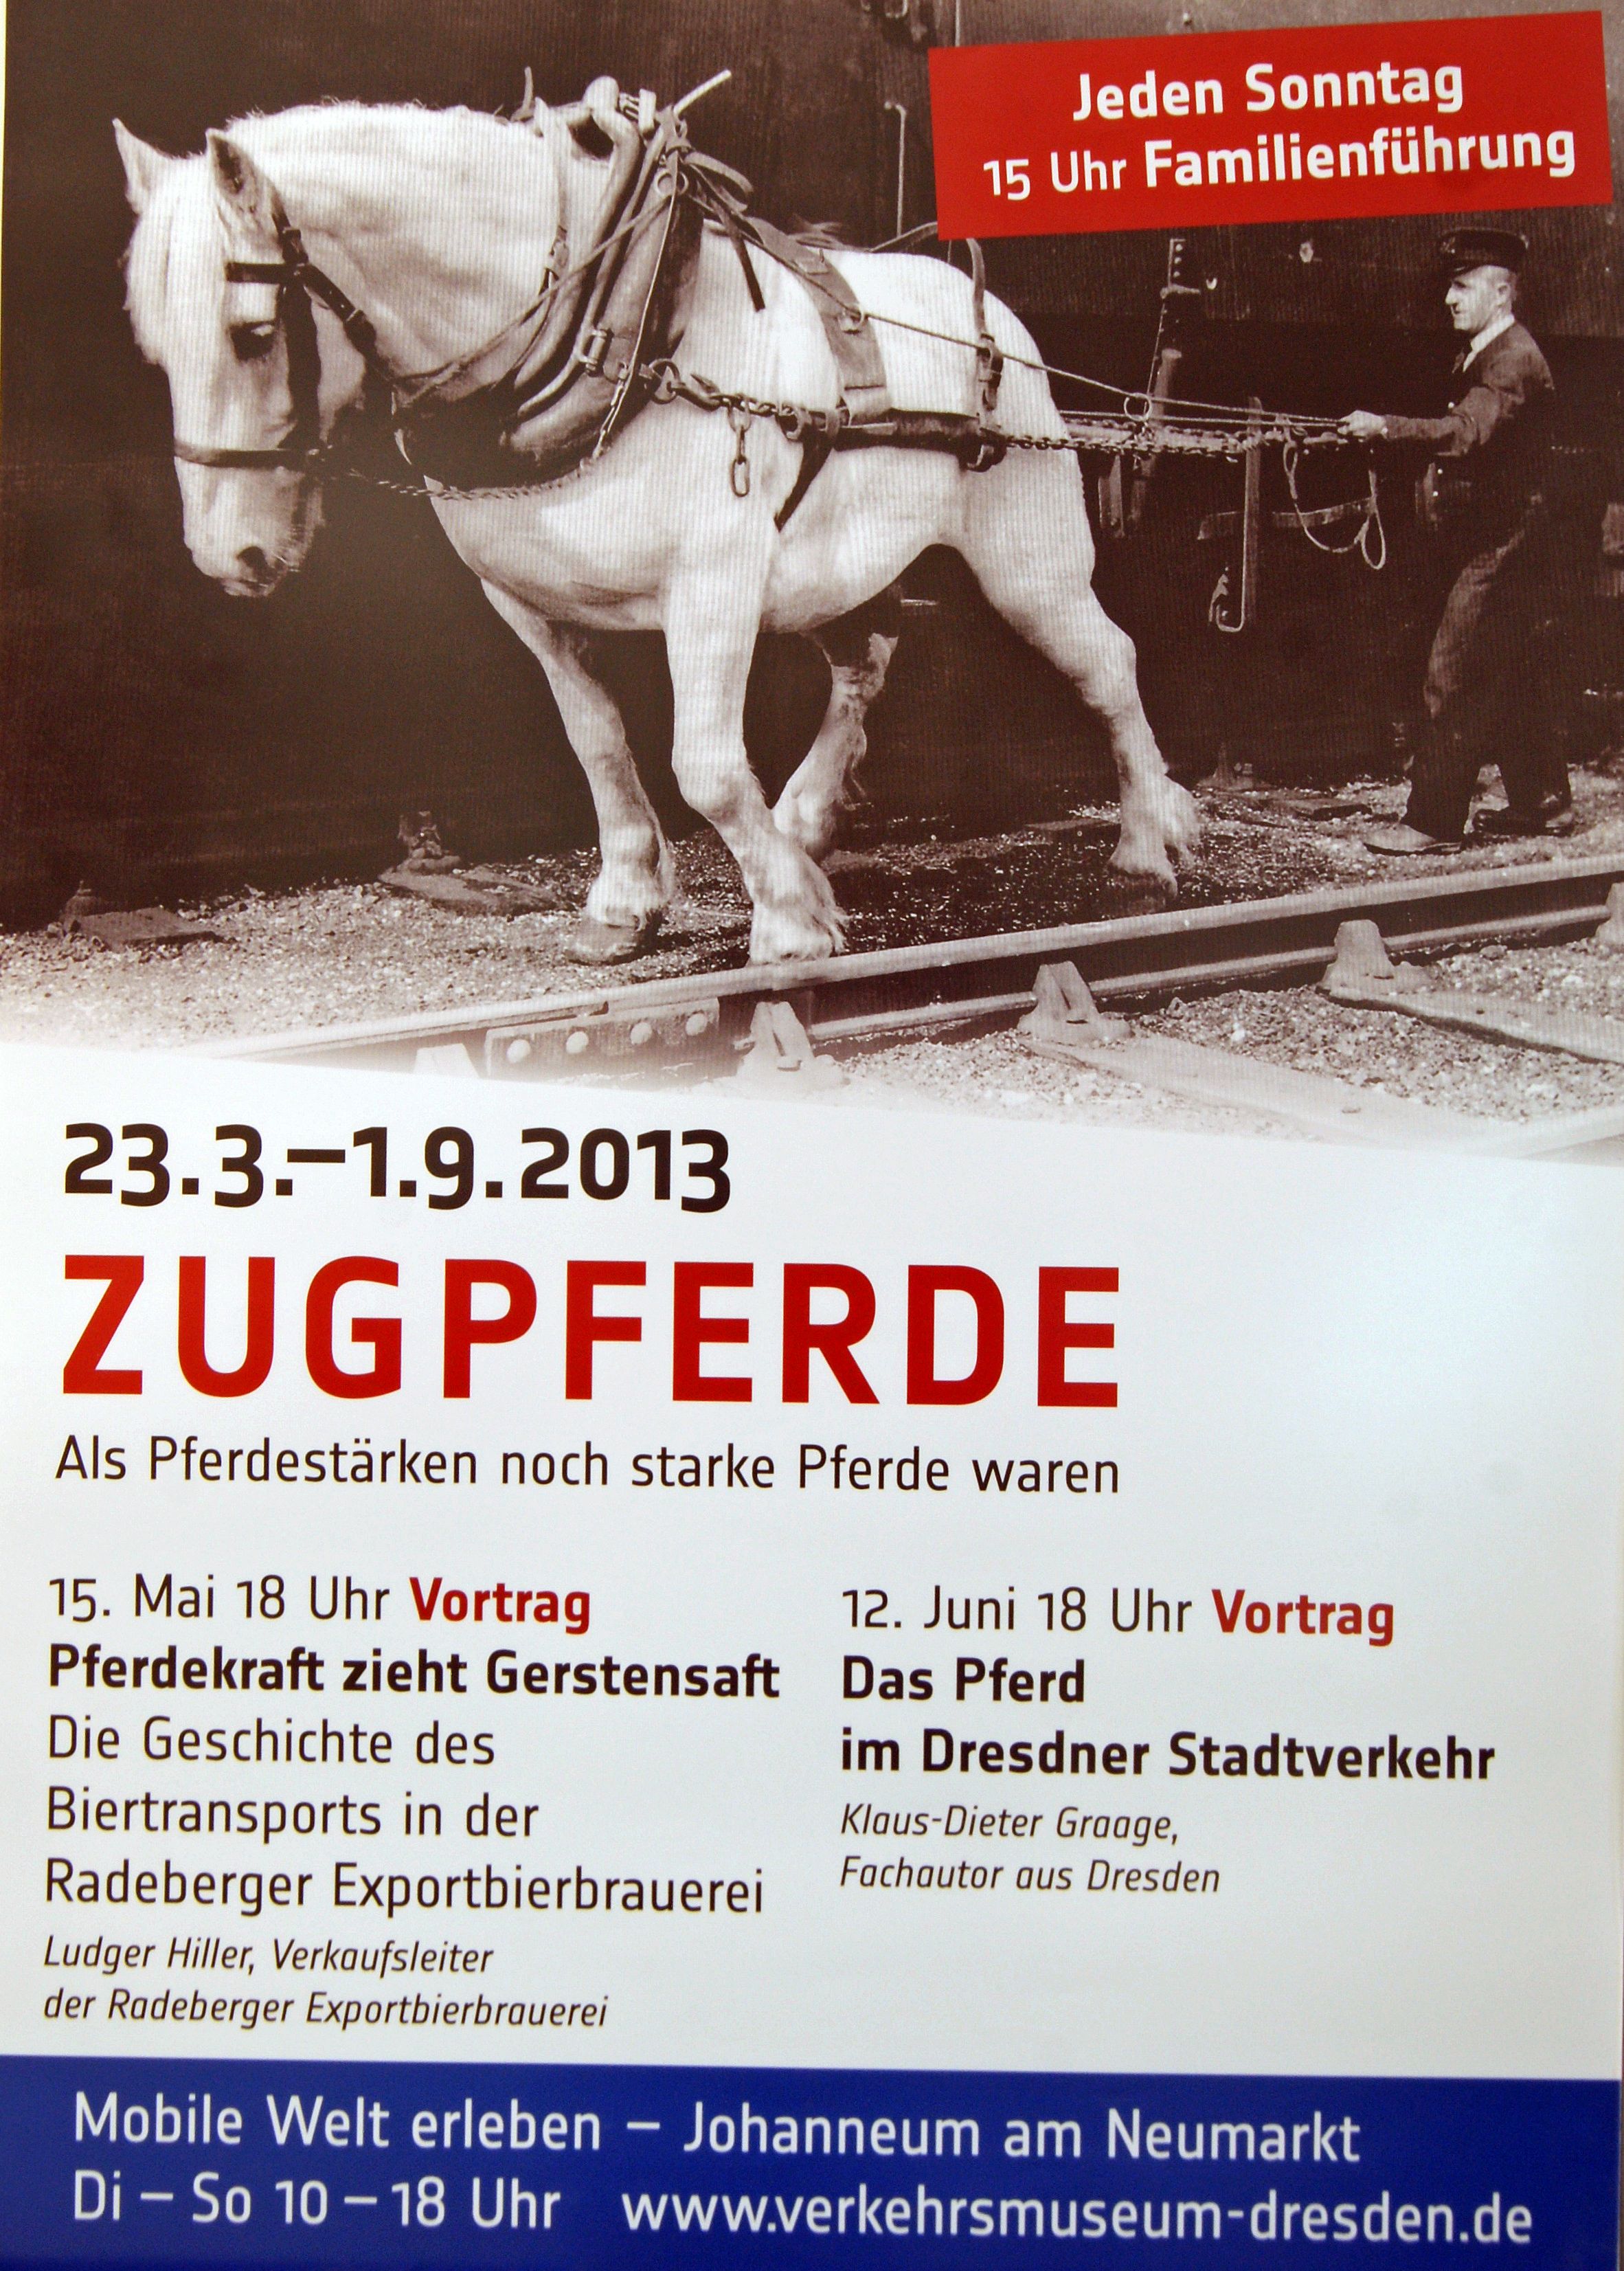 Zugpferde - als Pferdestärken noch starke Pferde waren, Sonderausstellung im Verkehrsmuseum, 23.3.-1.9.2013